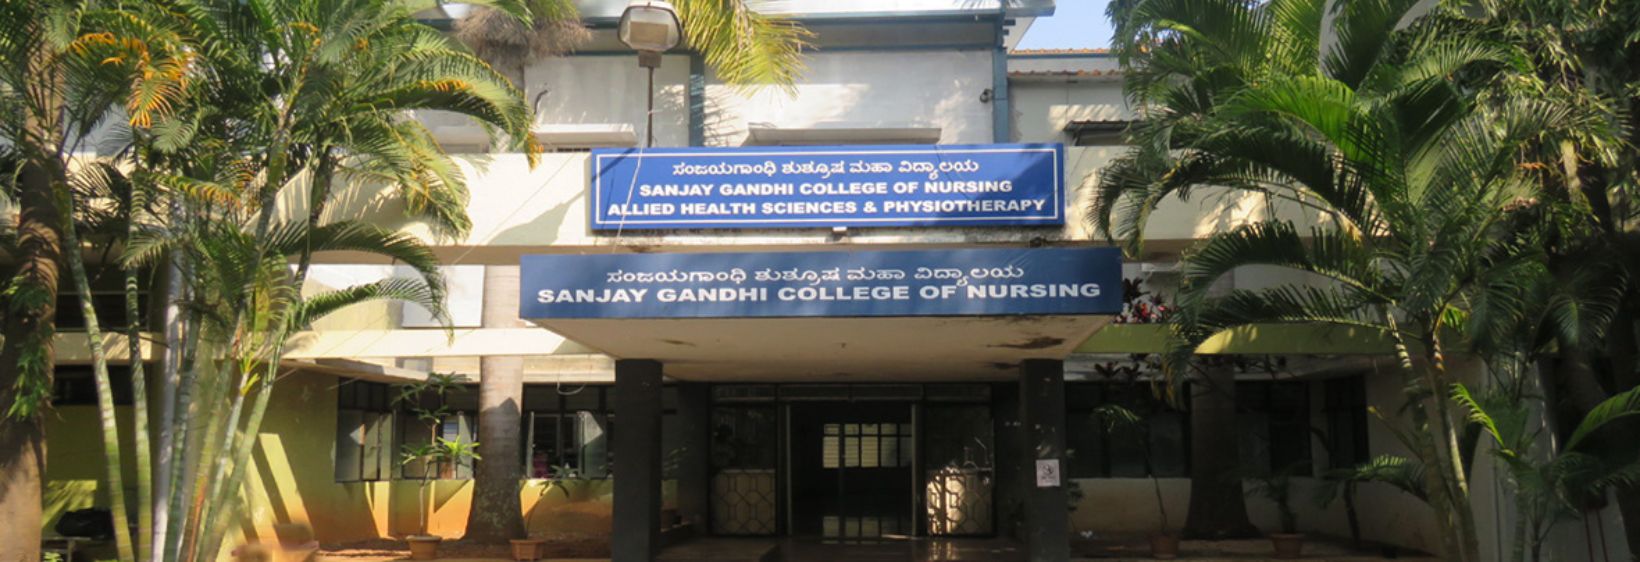 Sanjay Gandhi College of Nursing - Bangalore